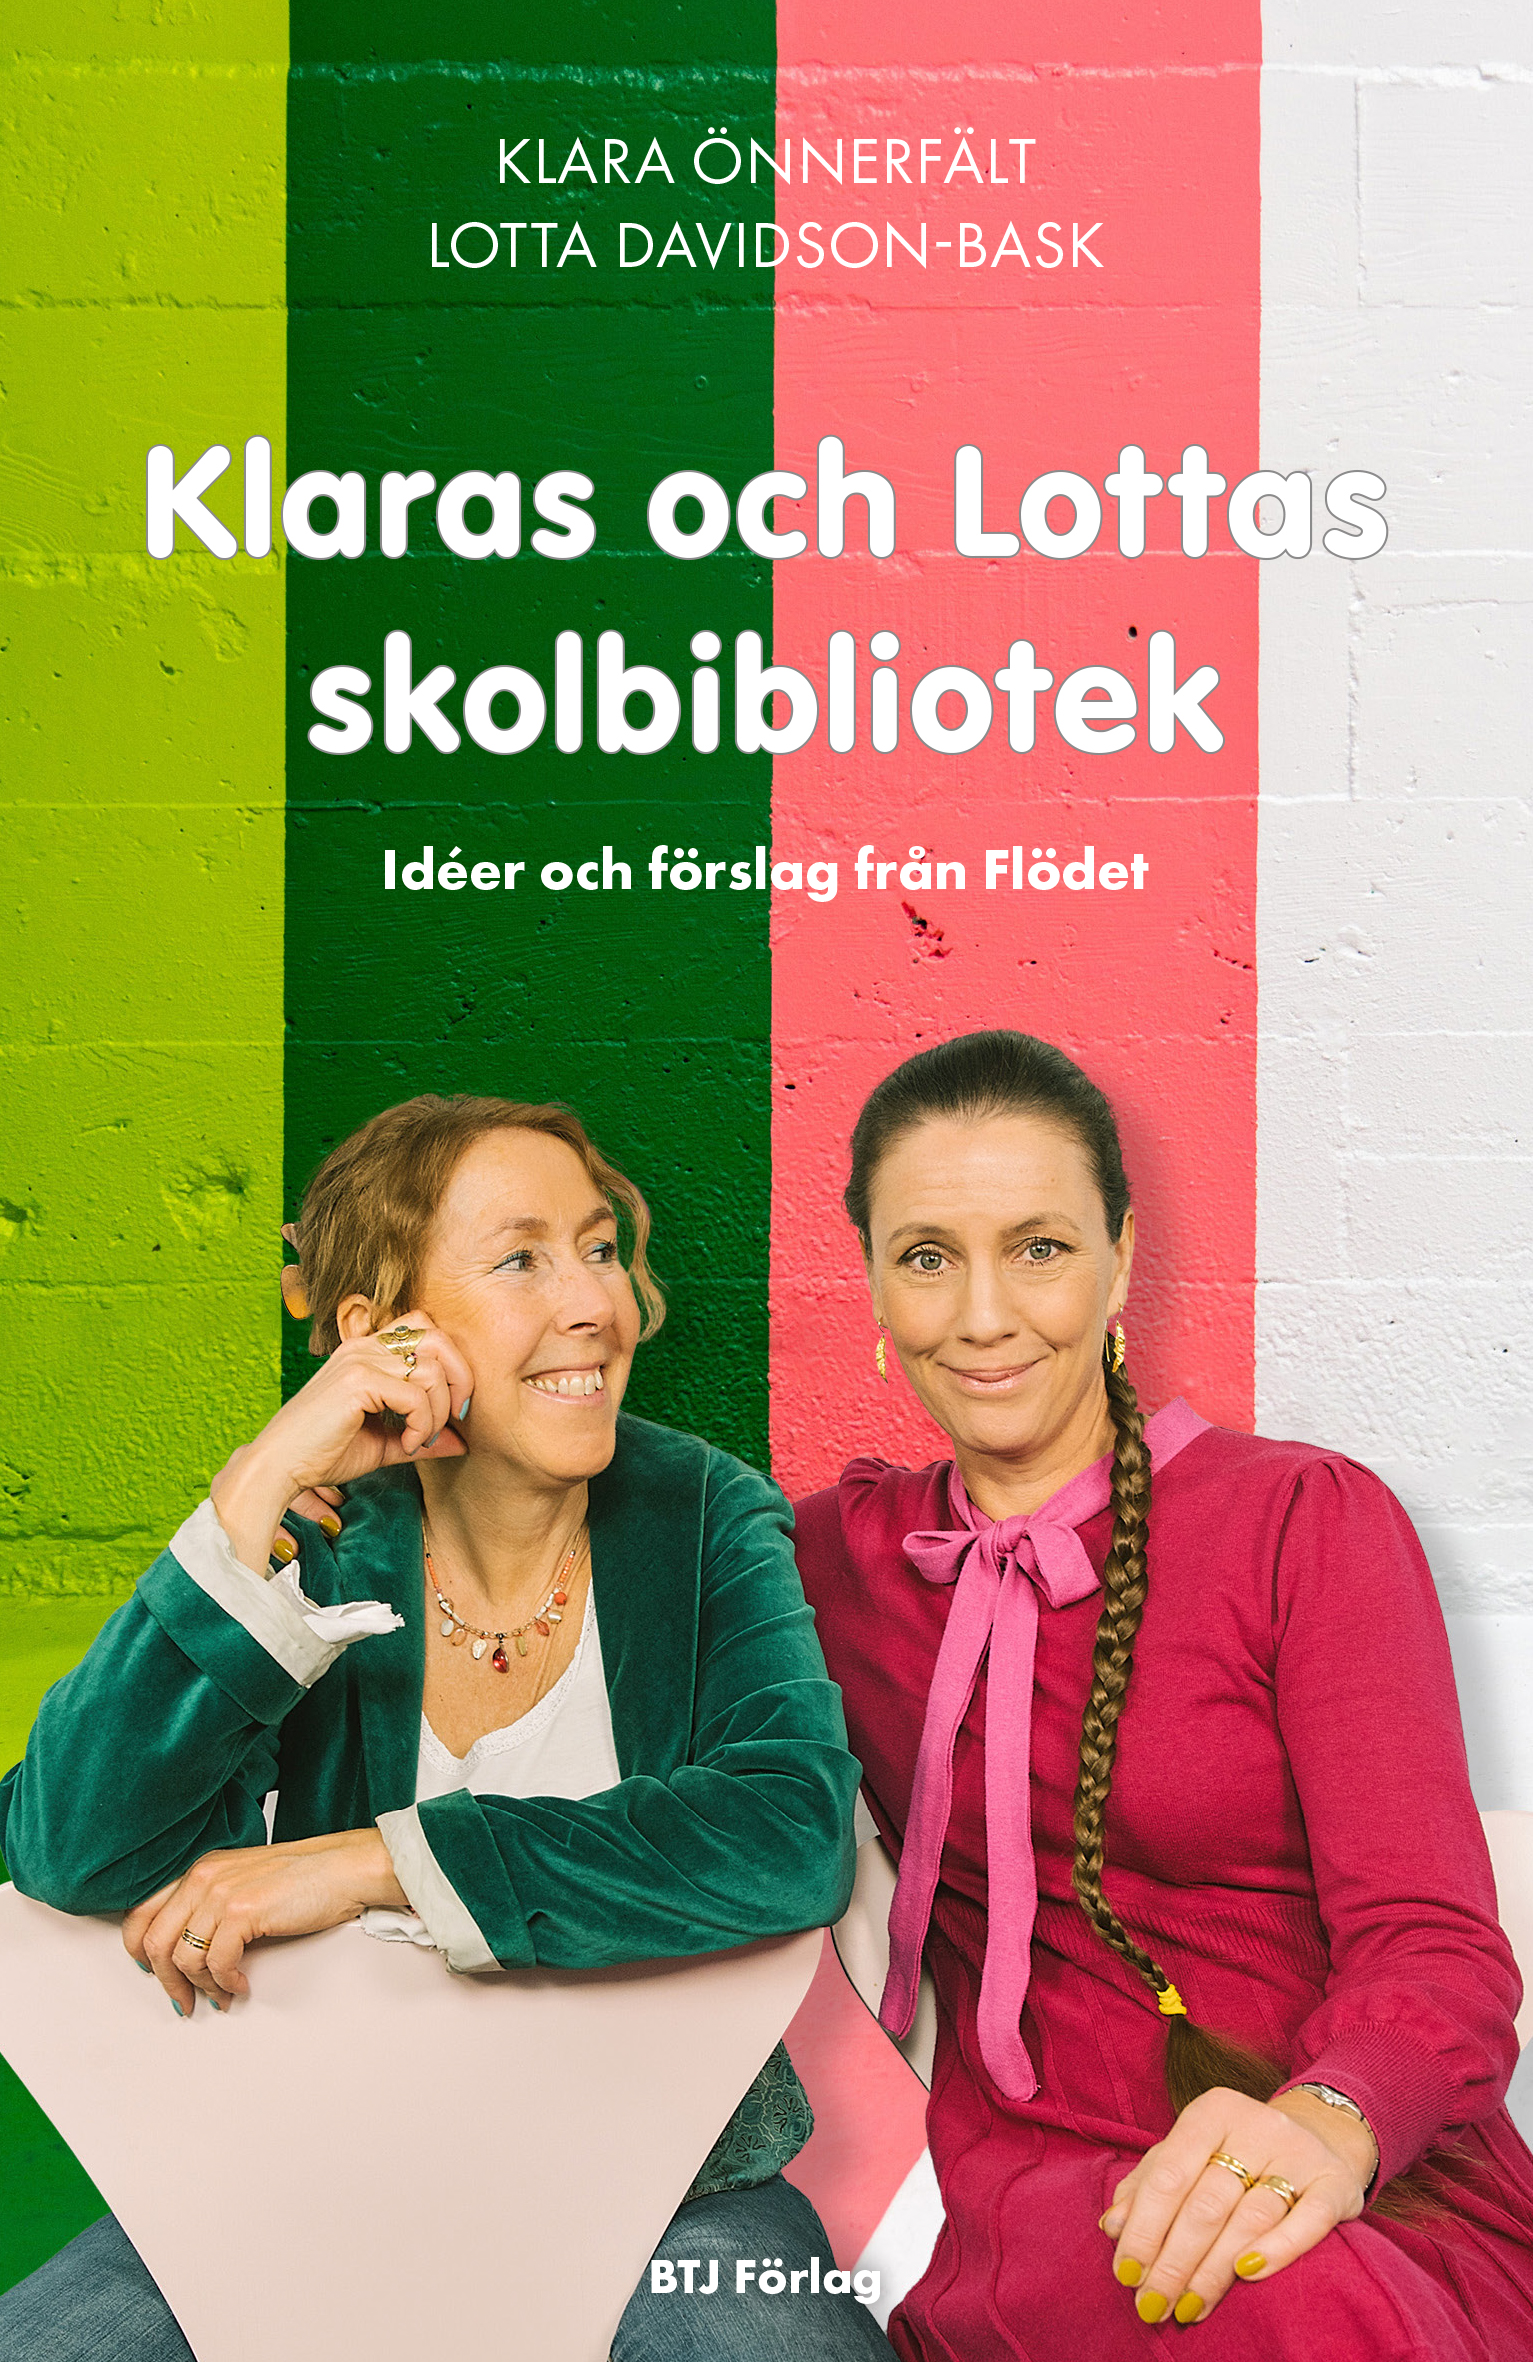 Klaras och Lottas skolbibliotek - idéer och förslag från Flödet